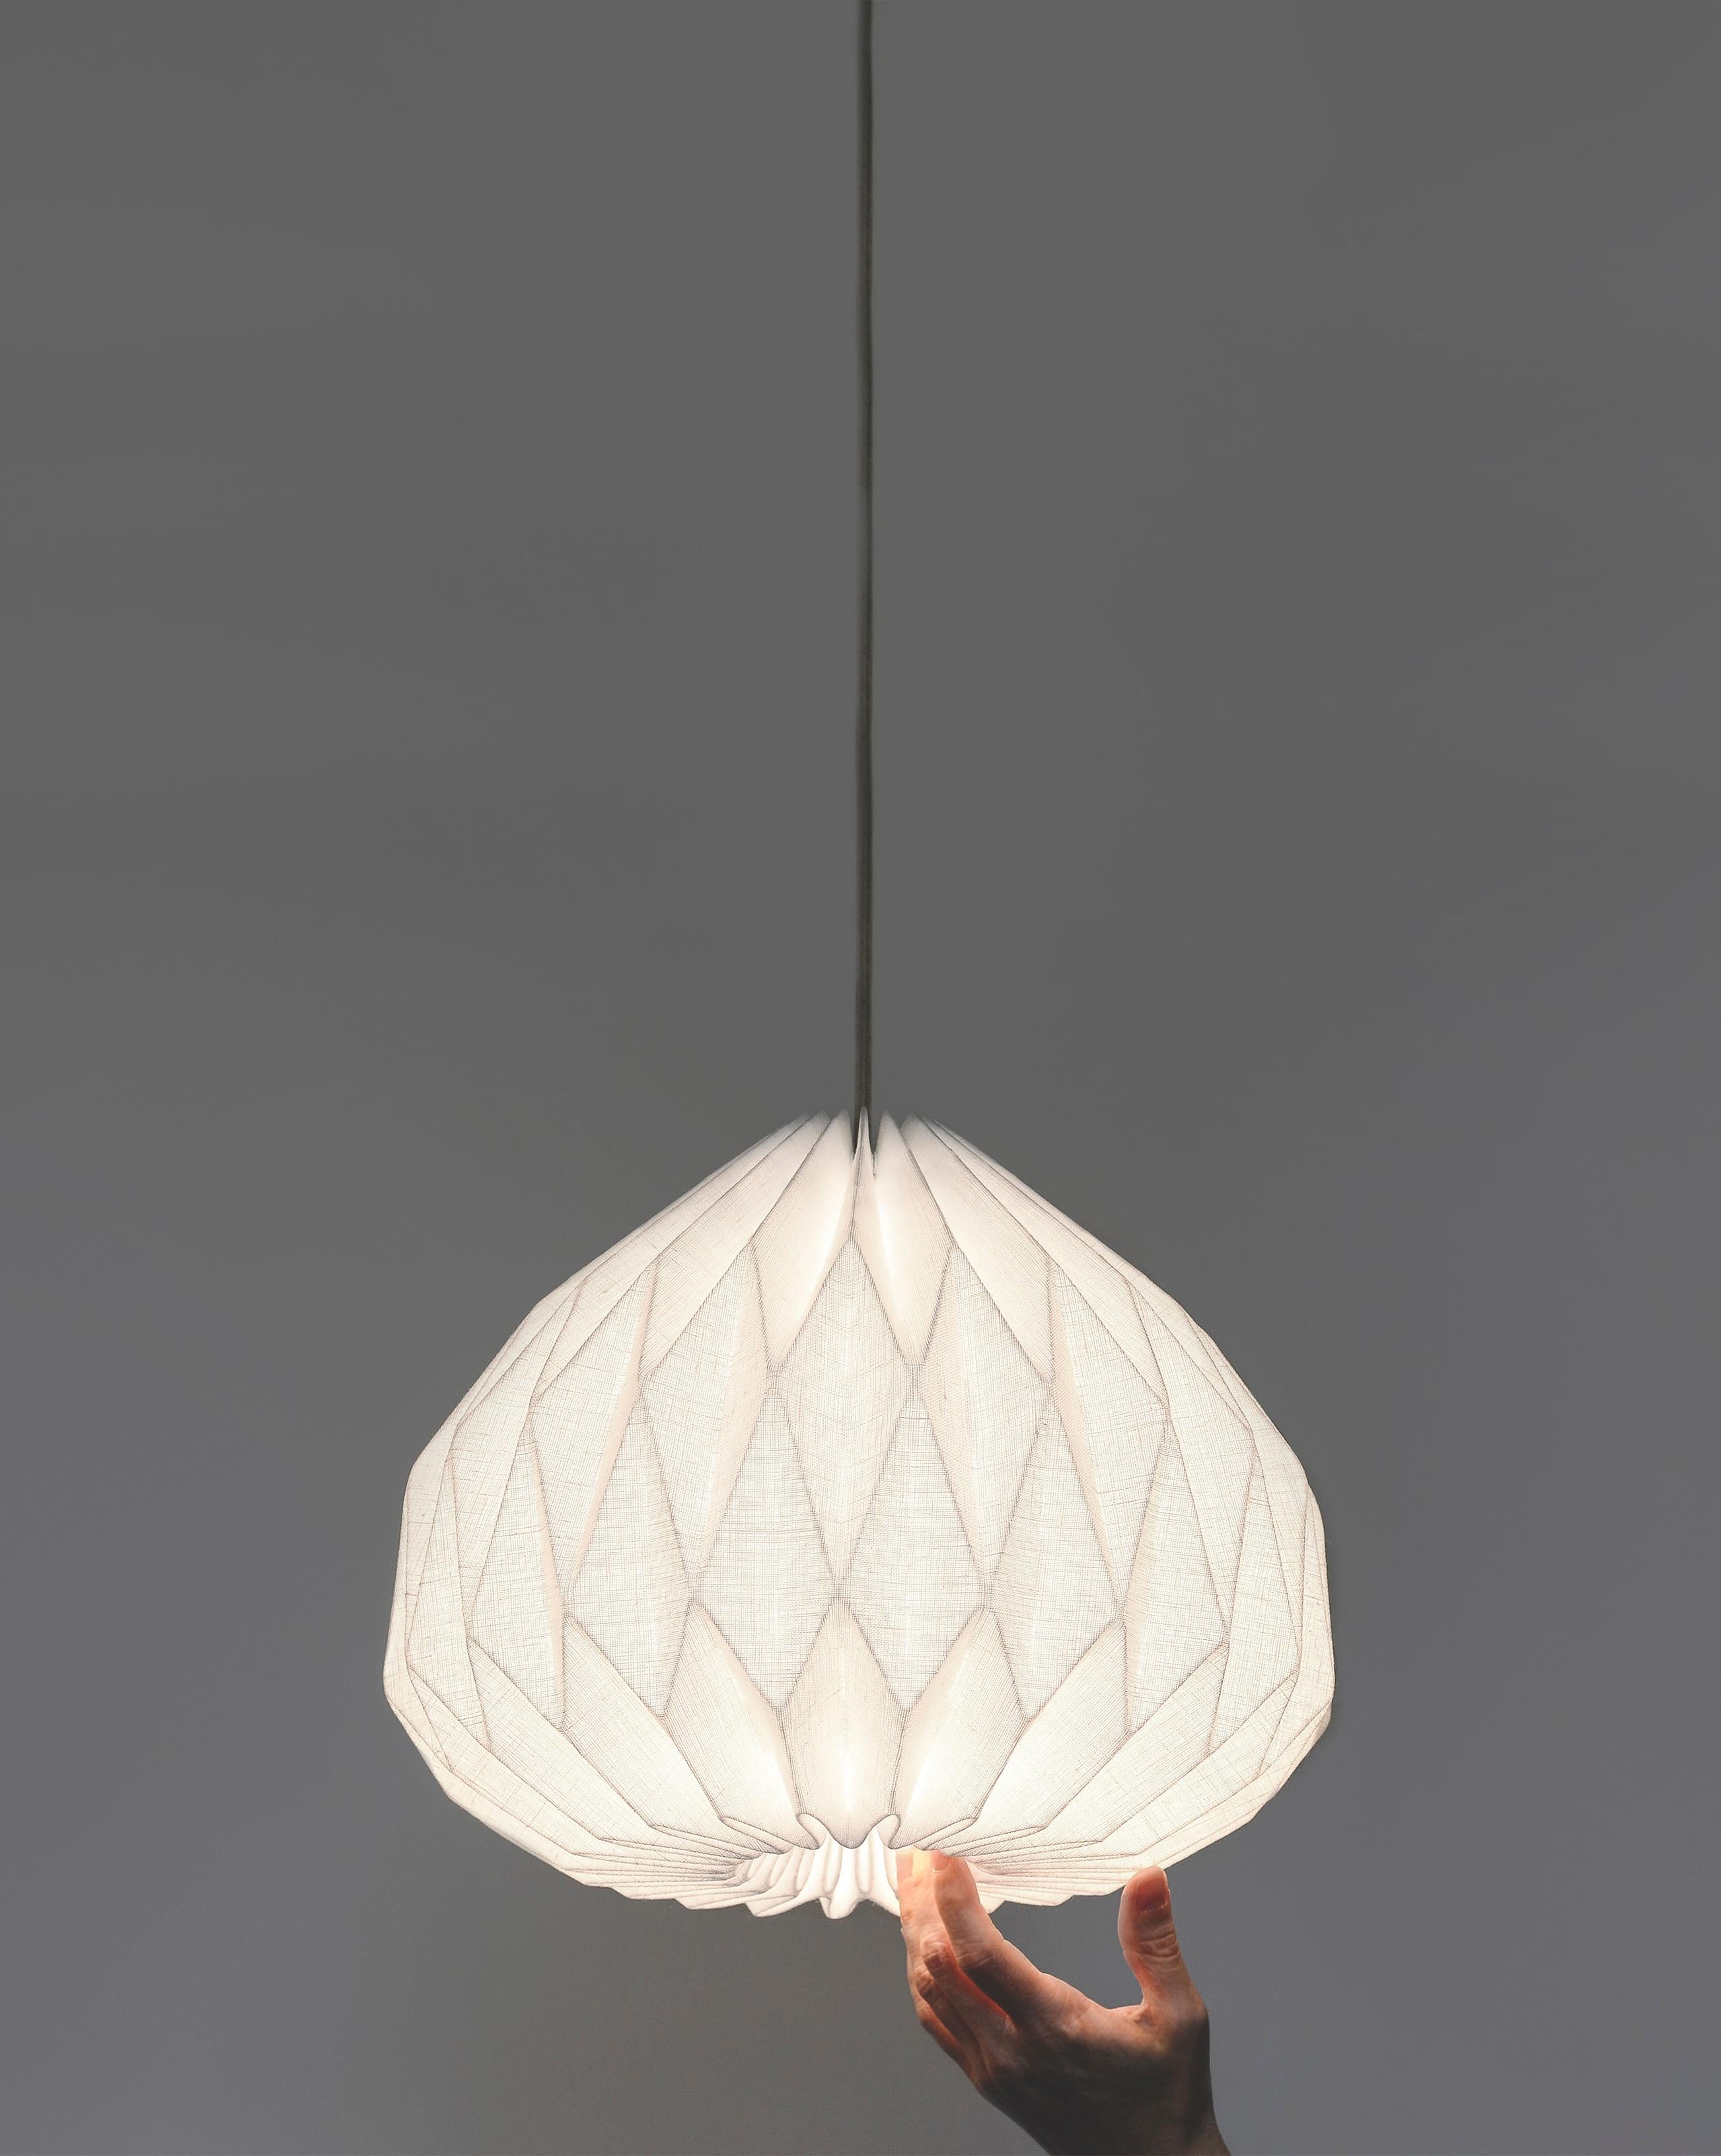 Cette lampe suspendue de style moderne ajoutera une œuvre d'art intéressante et fonctionnelle à votre intérieur.
Fabriqué en tissu de ligne laminé plié à la main, l'abat-jour suspendu fournit un éclairage d'ambiance doux tout en conservant une